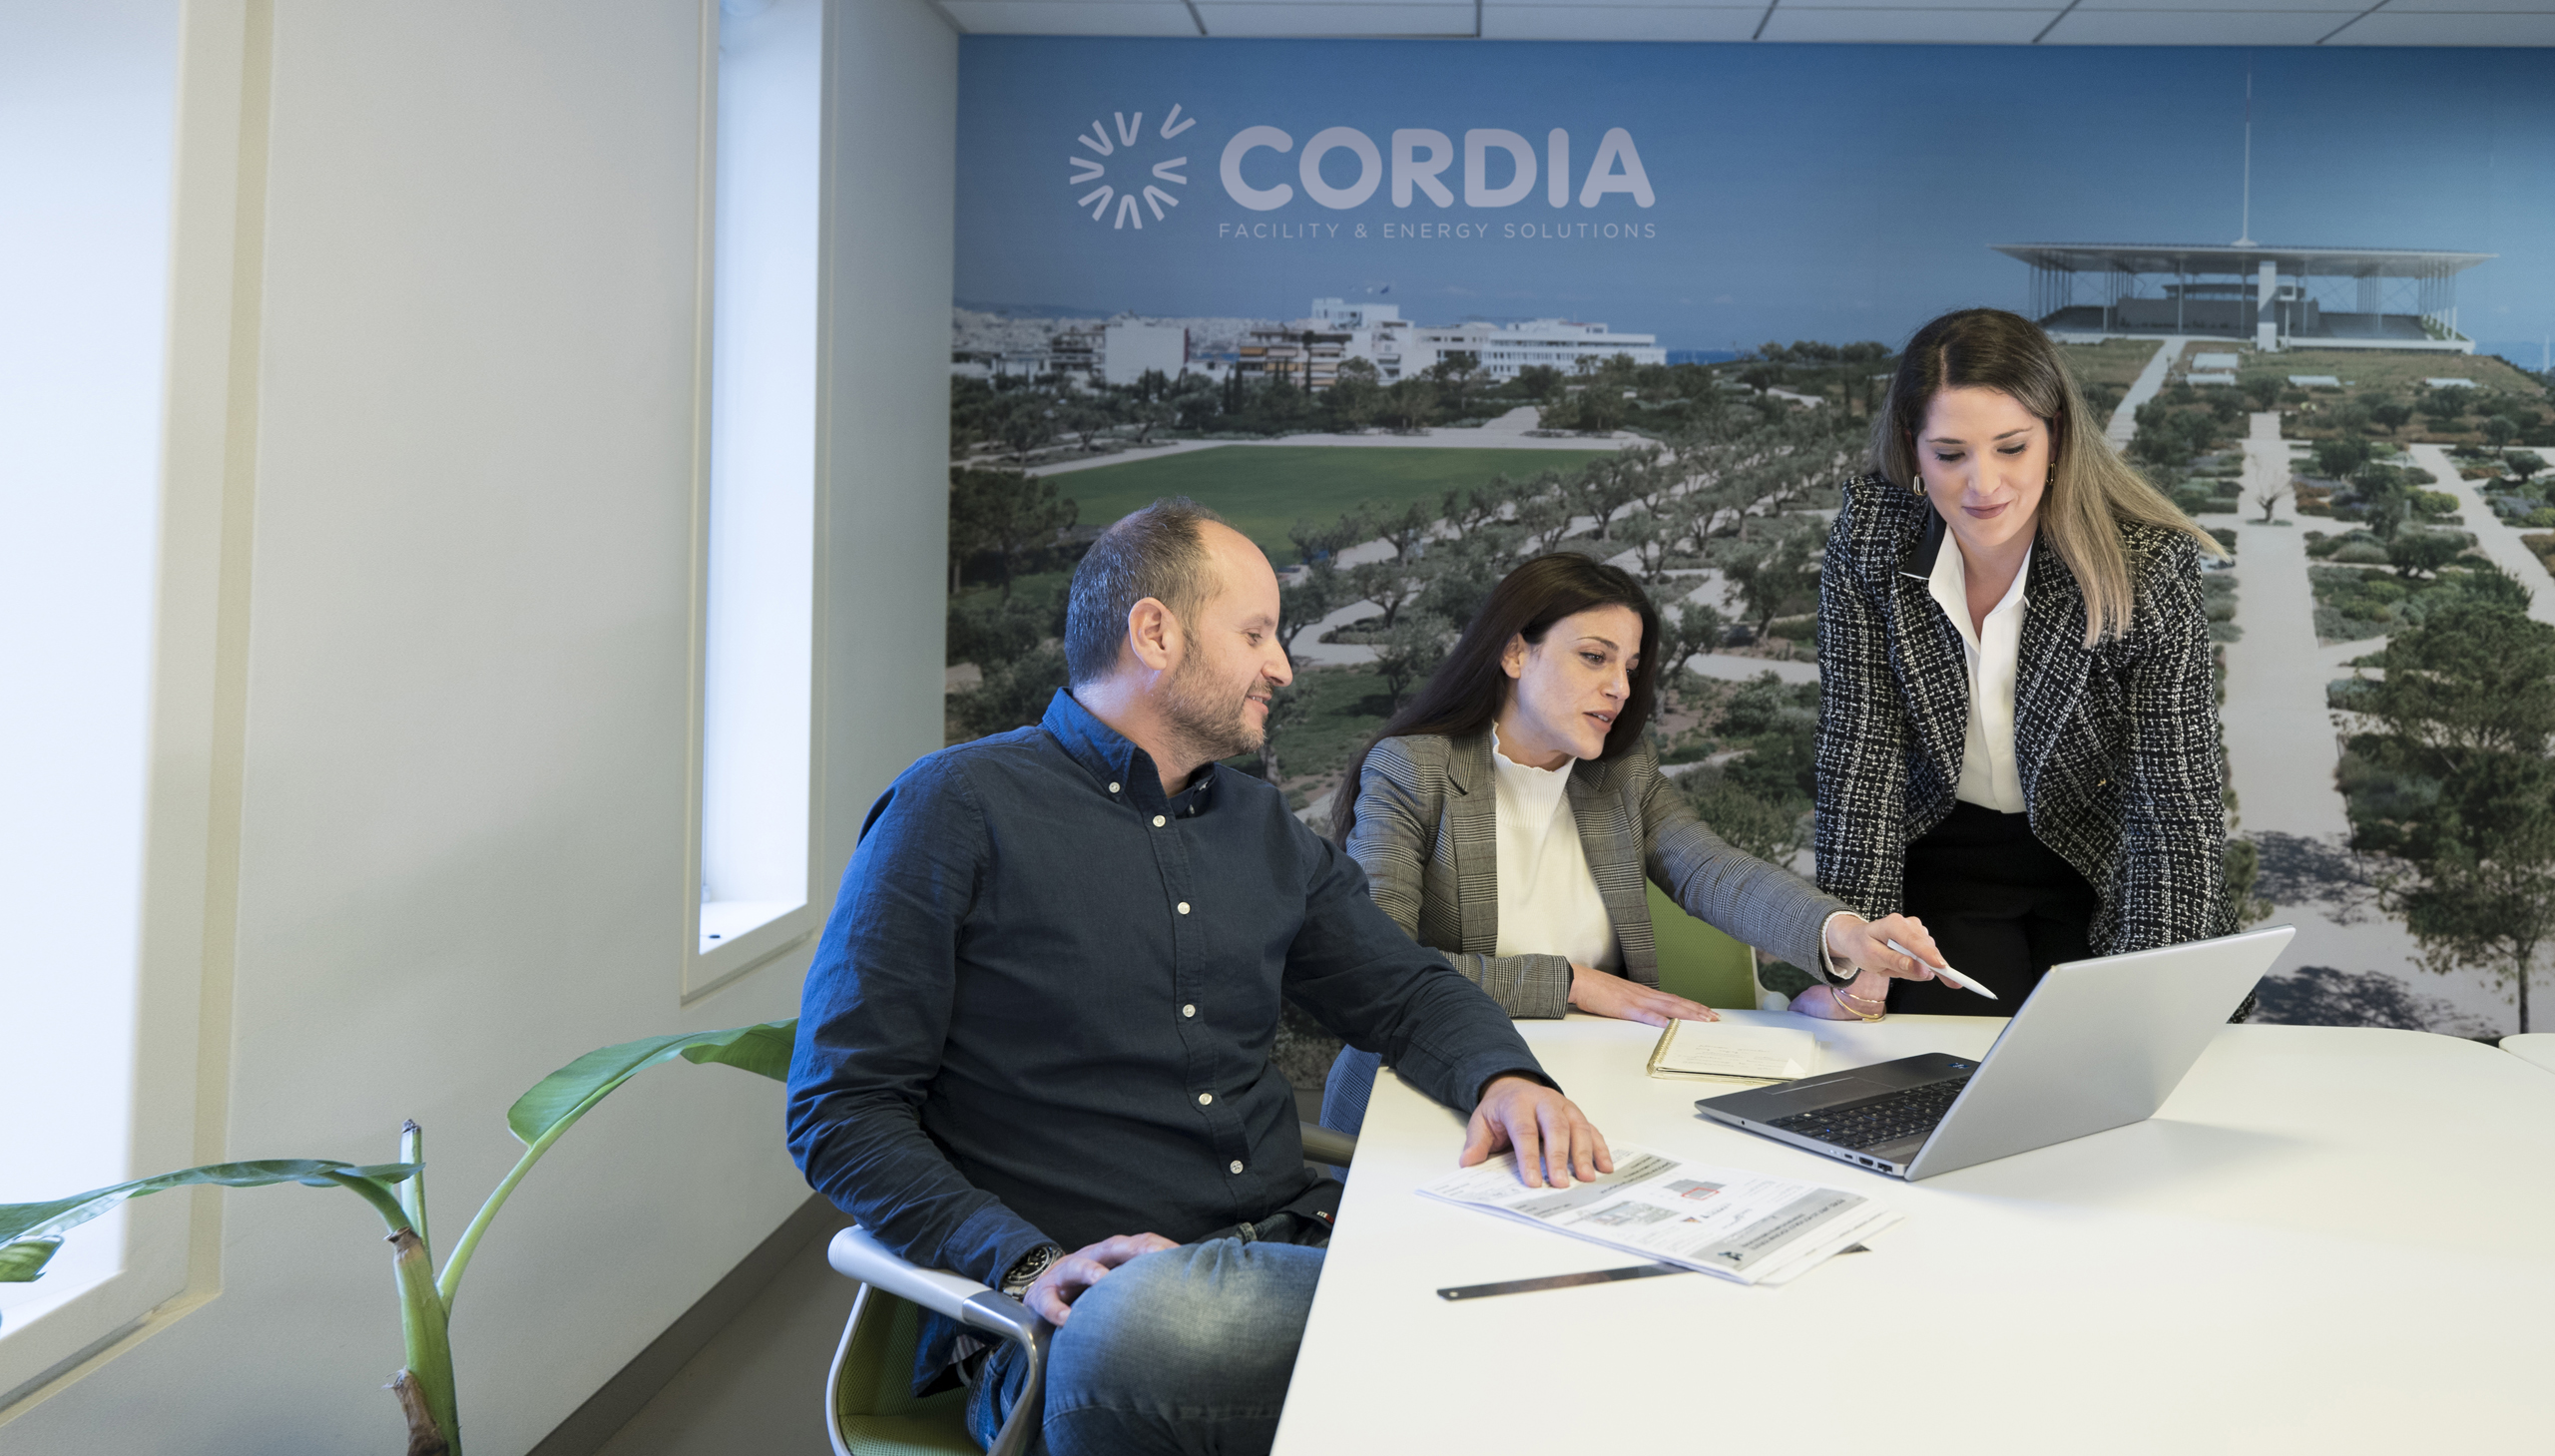 Ο όμιλος CORDIA απέκτησε την εταιρεία καθαρισμού Imagin